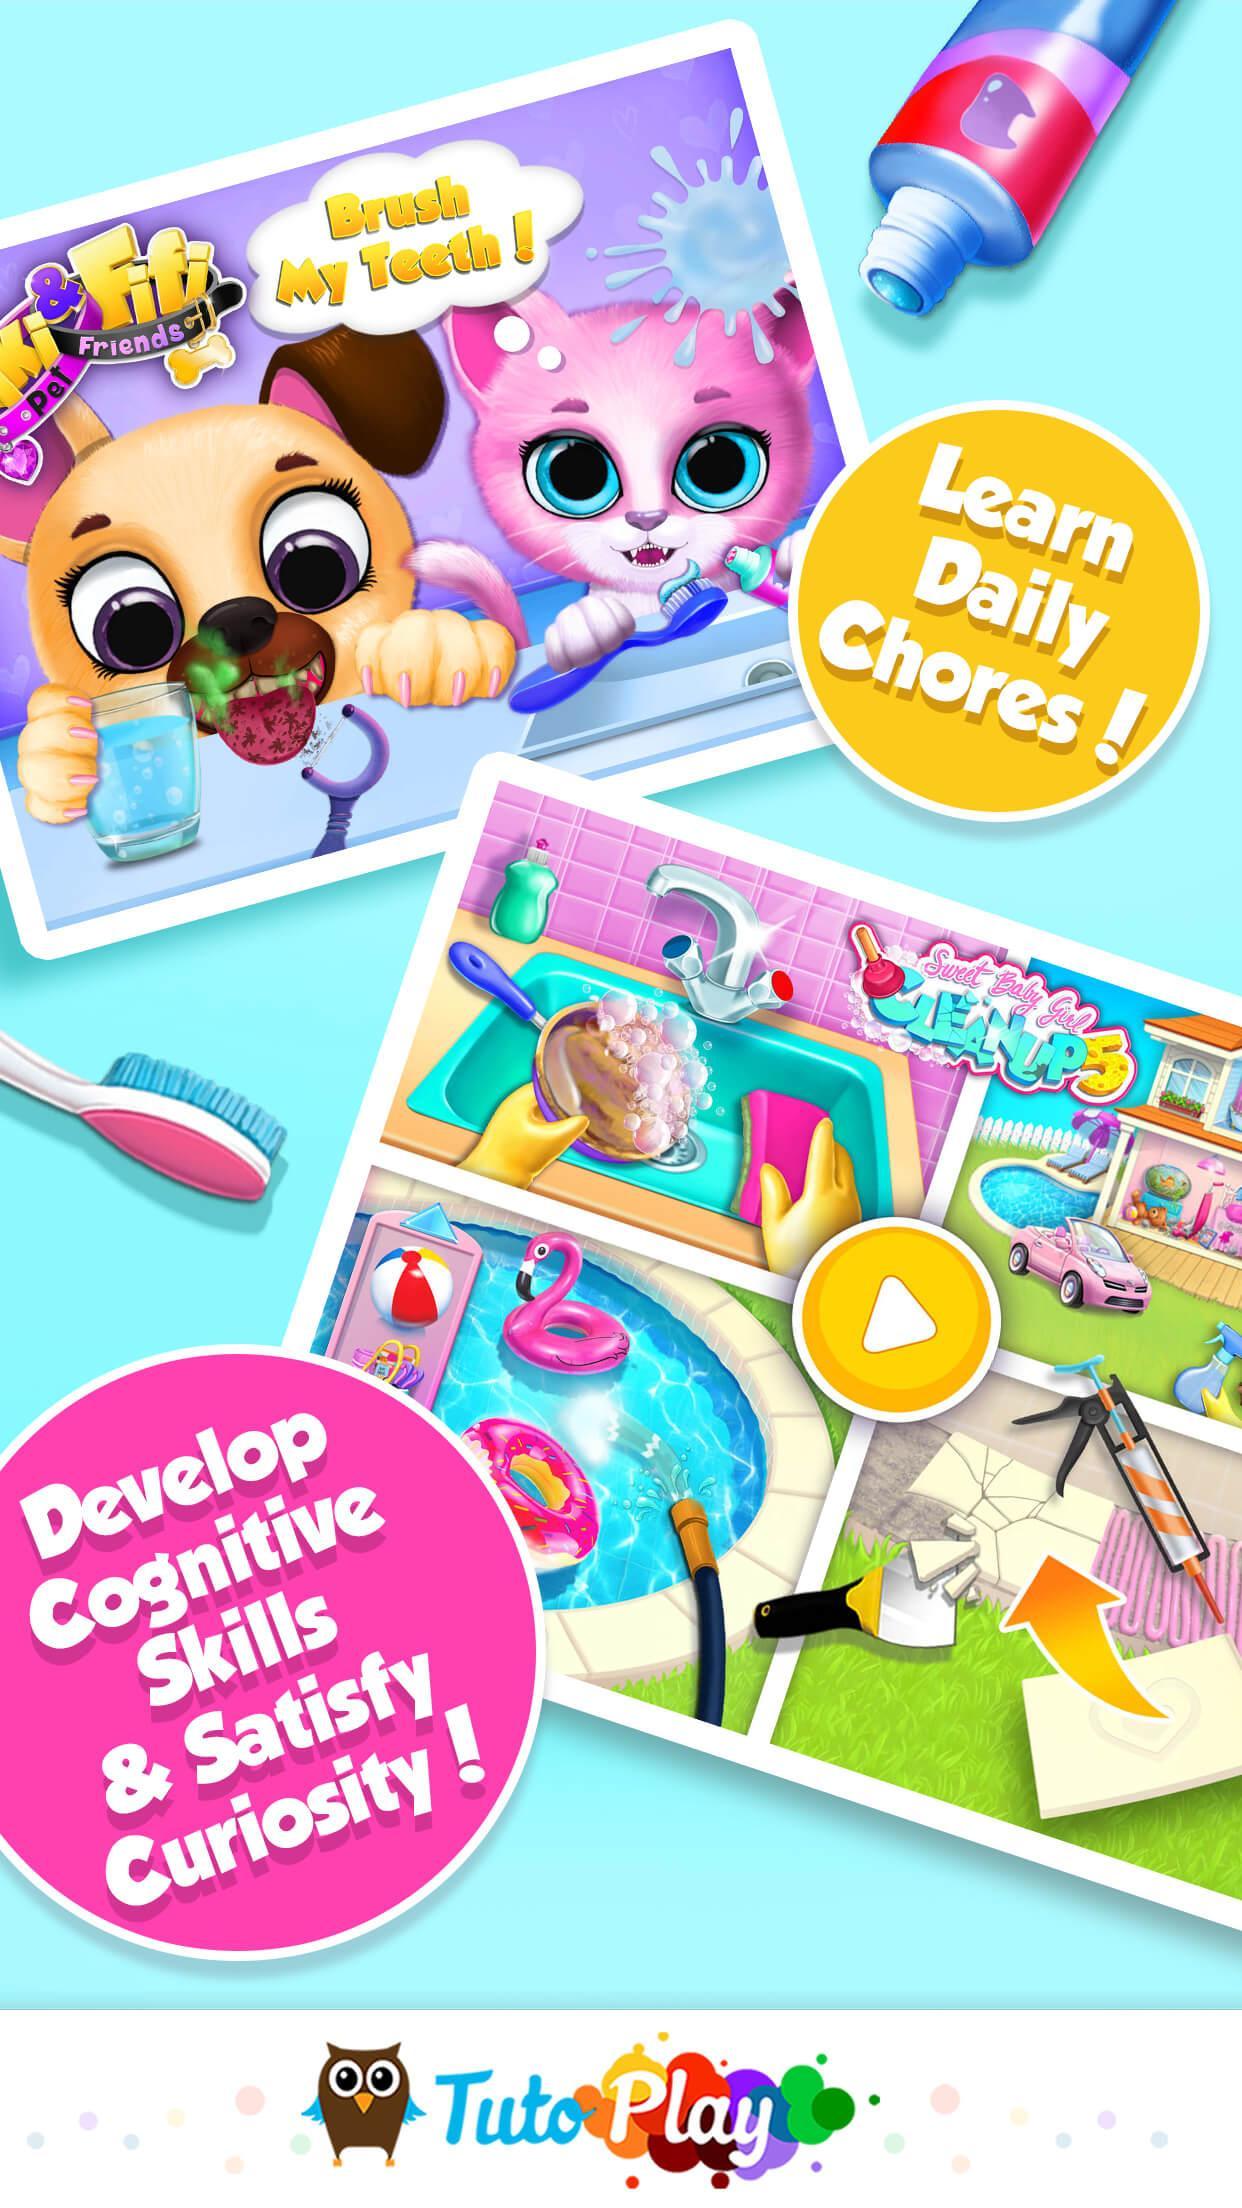 TutoPLAY Best Kids Games in 1 App 3.4.601 Screenshot 5